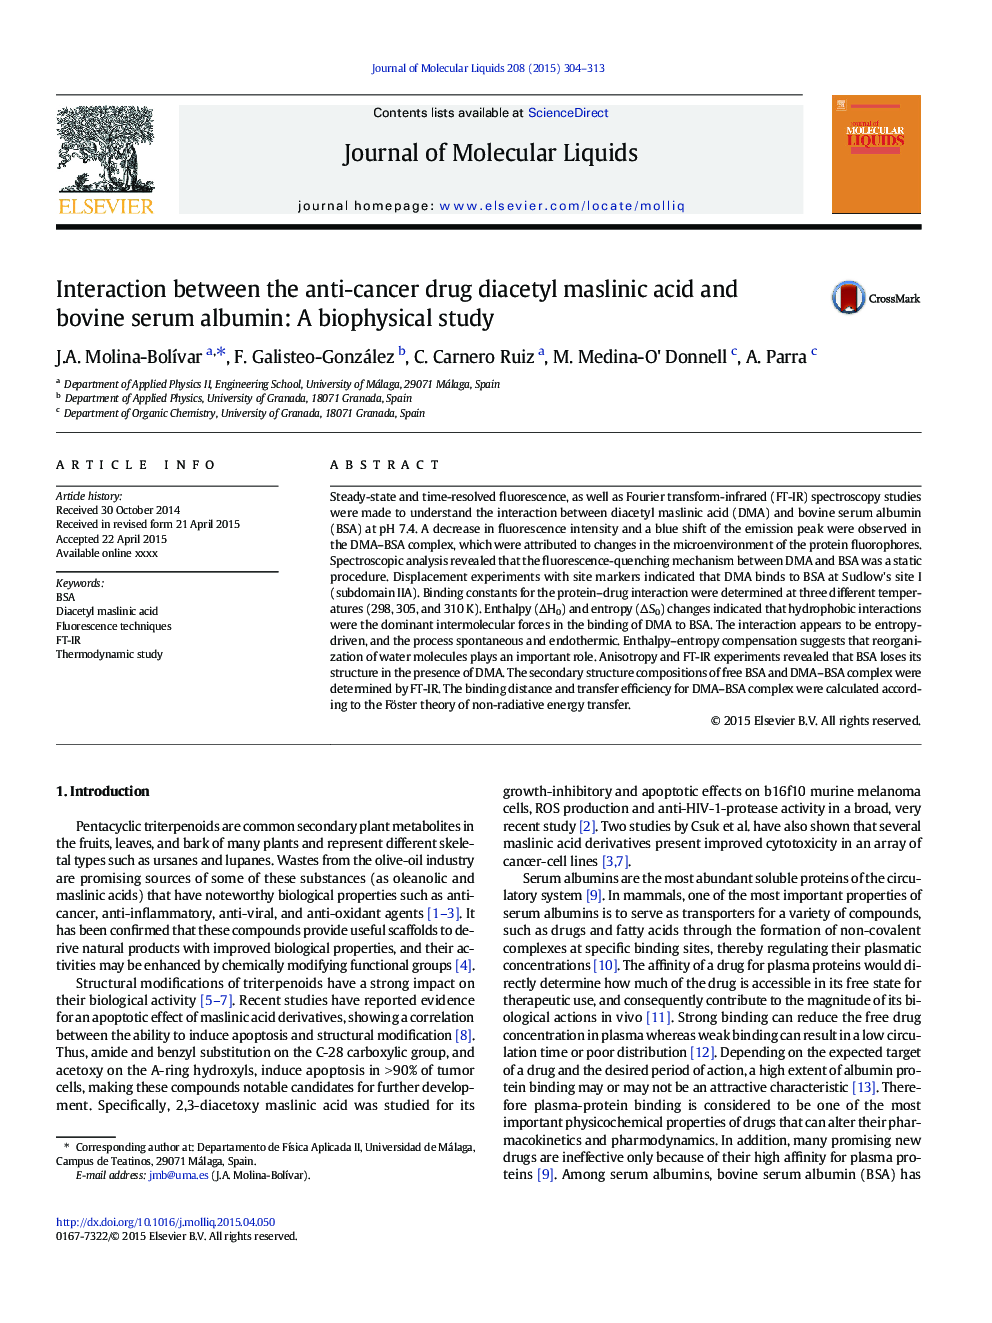 تعامل بین داروهای ضد سرطان دیابتیل اسید ماسلینیک و آلبومین سرم گاو: یک مطالعه بیوفیزیکی 